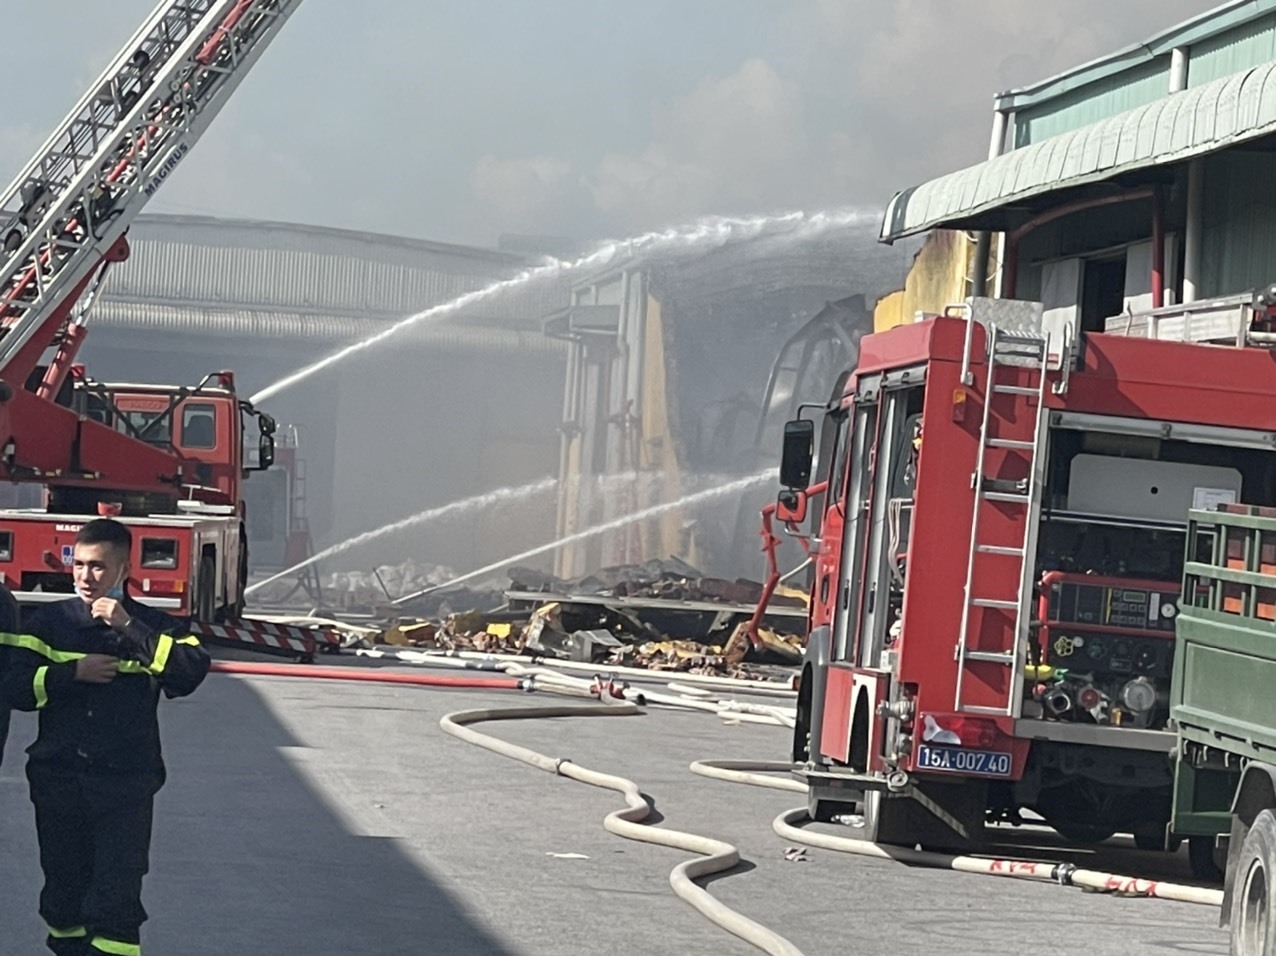 Lực lượng phòng cháy chữa cháy khẩn trương thực hiện nhiệm vụ, đến khoảng 13 giờ chiều đám cháy đã được xử lý hoàn toàn. Ảnh: CTV.